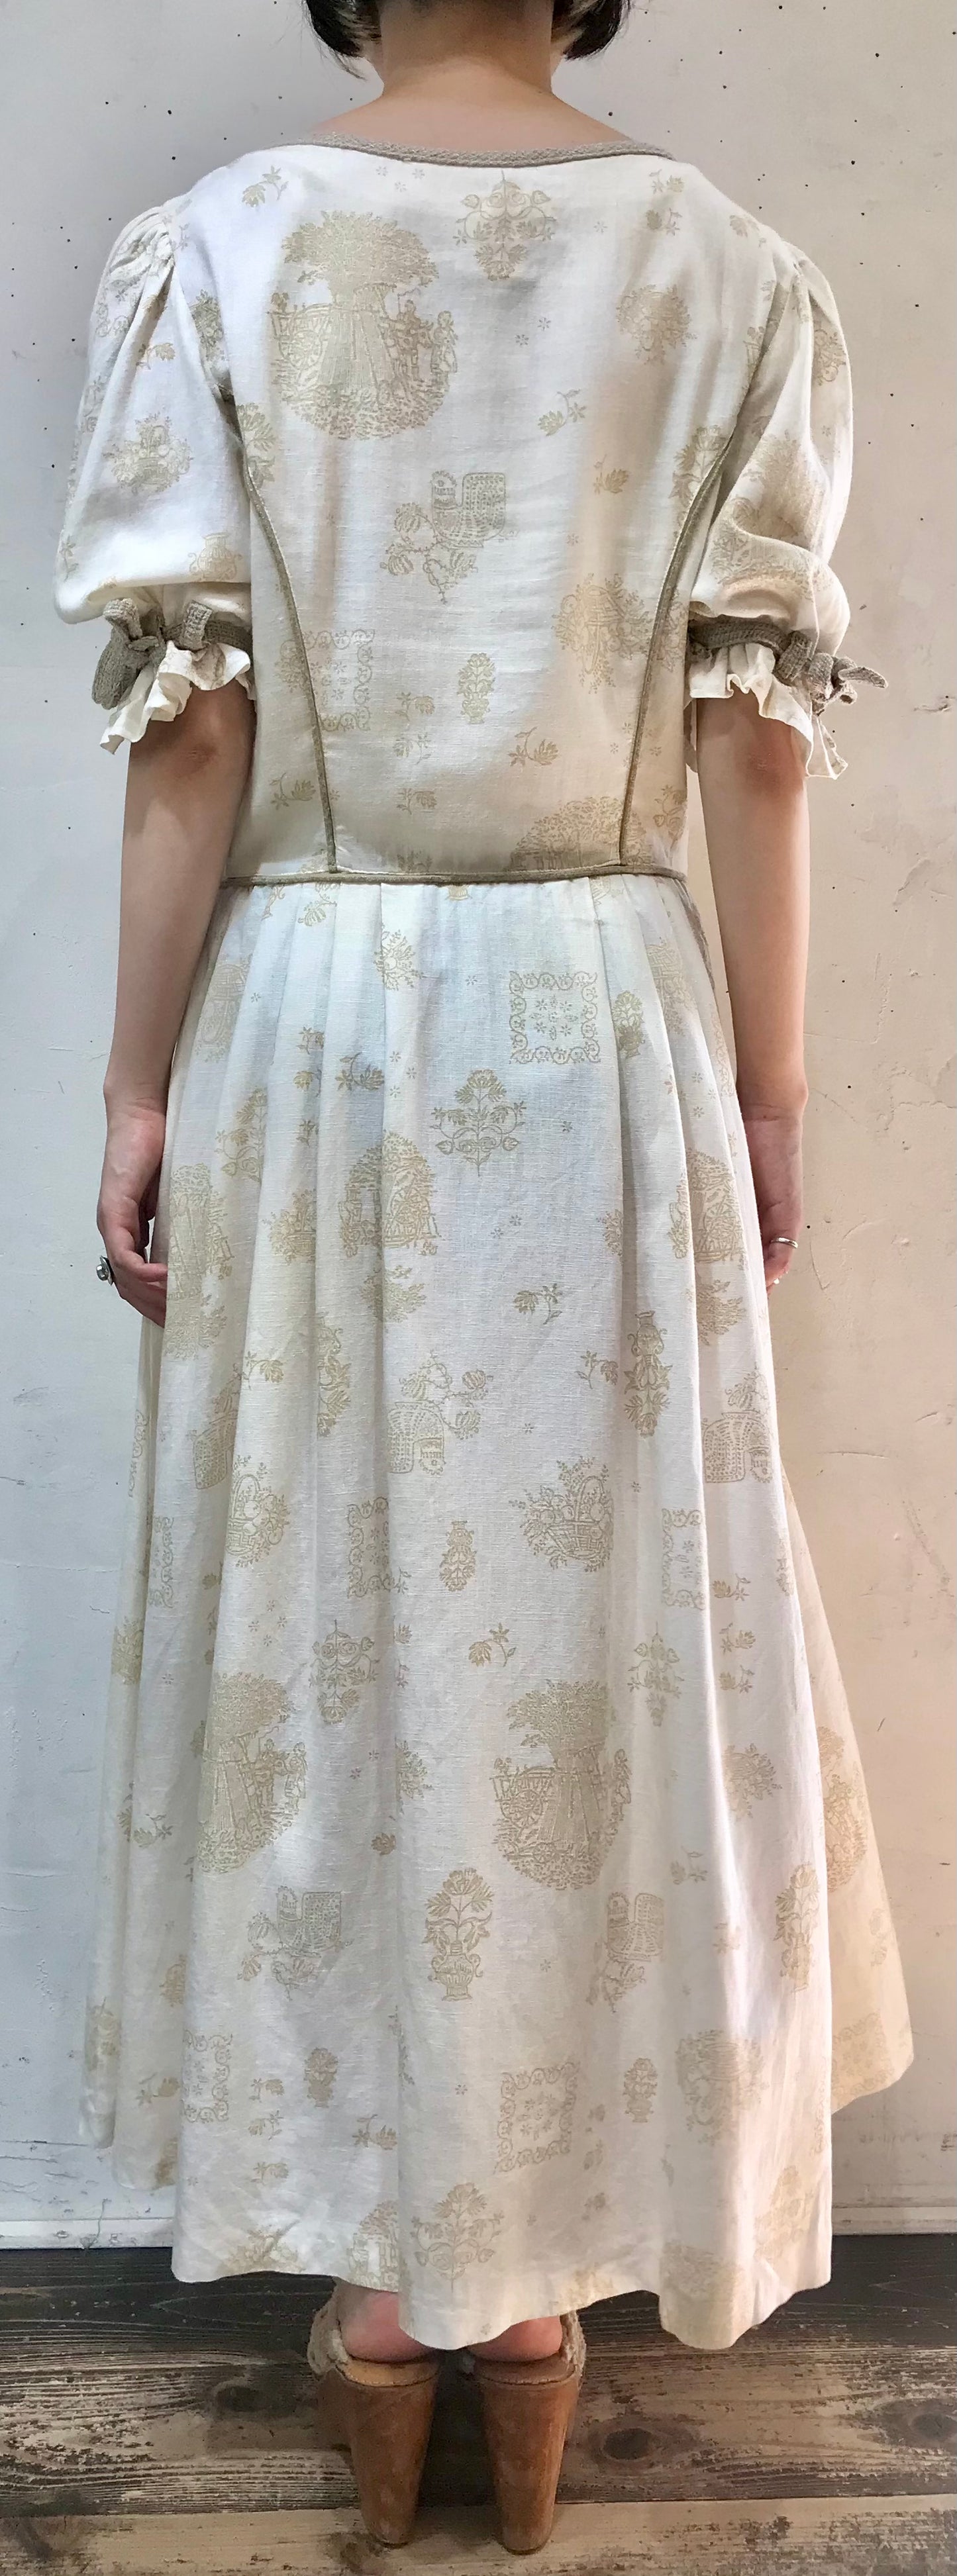 Vintage Dress 〜チロル×フラワーボタン〜 [C19714]